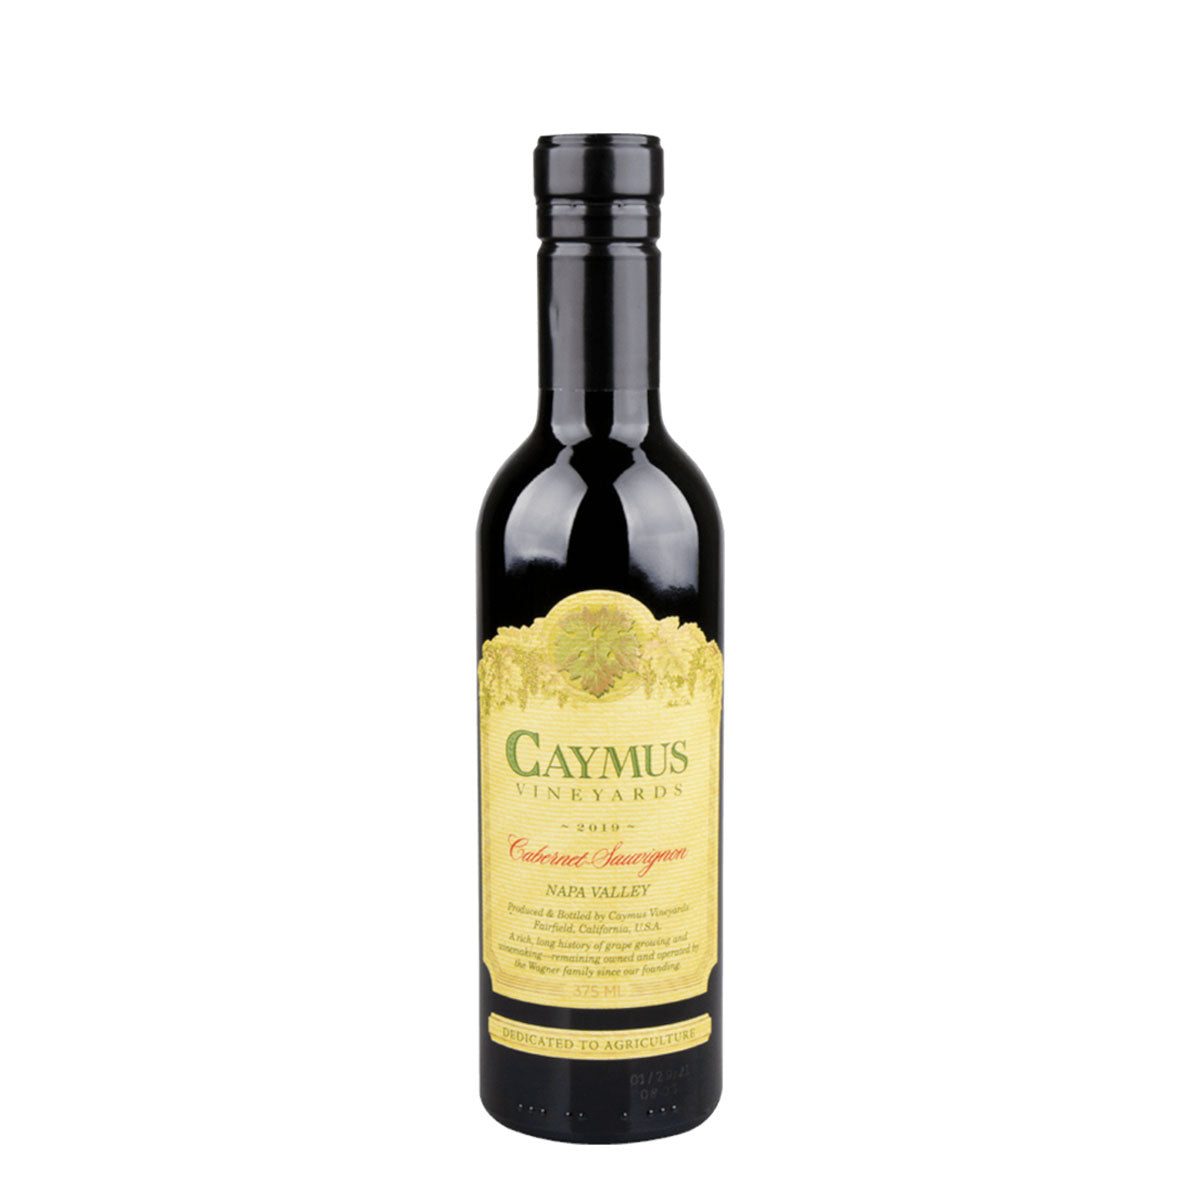 TAG Liquor Stores BC - Caymus Cabernet Sauvignon 375ml-wine